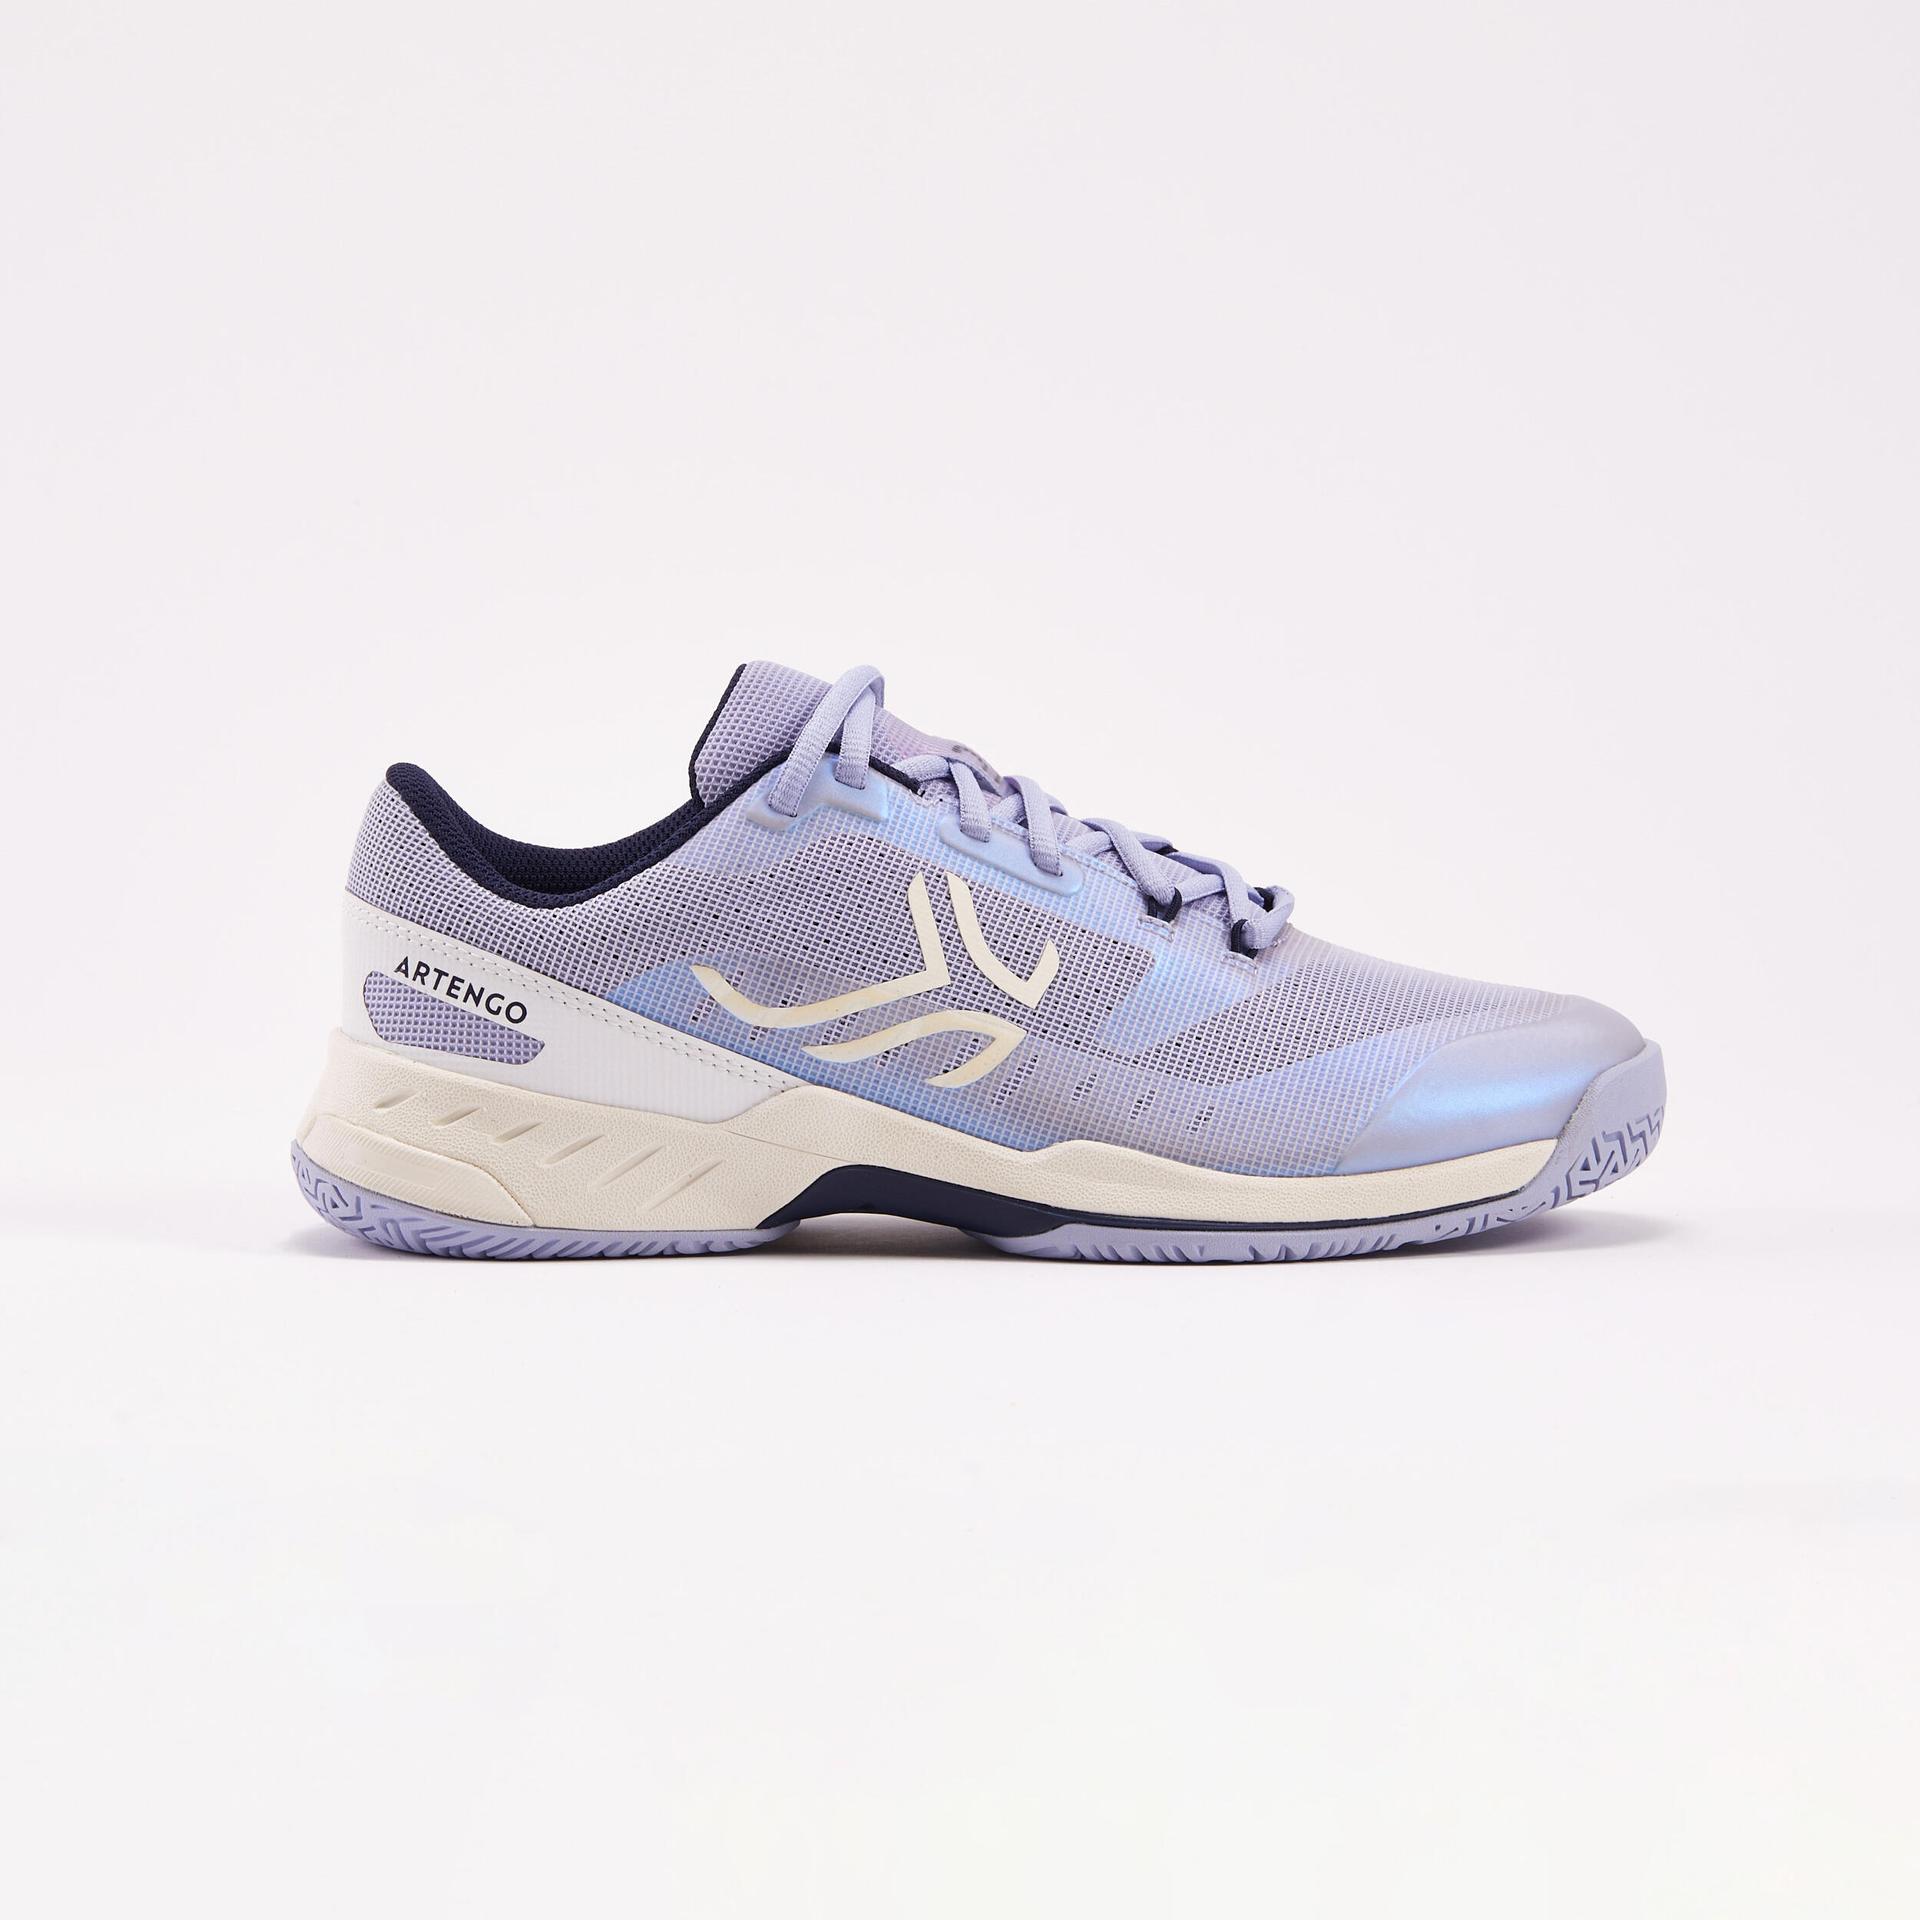 women's-multicourt-tennis-shoes-fast---lavender-blue